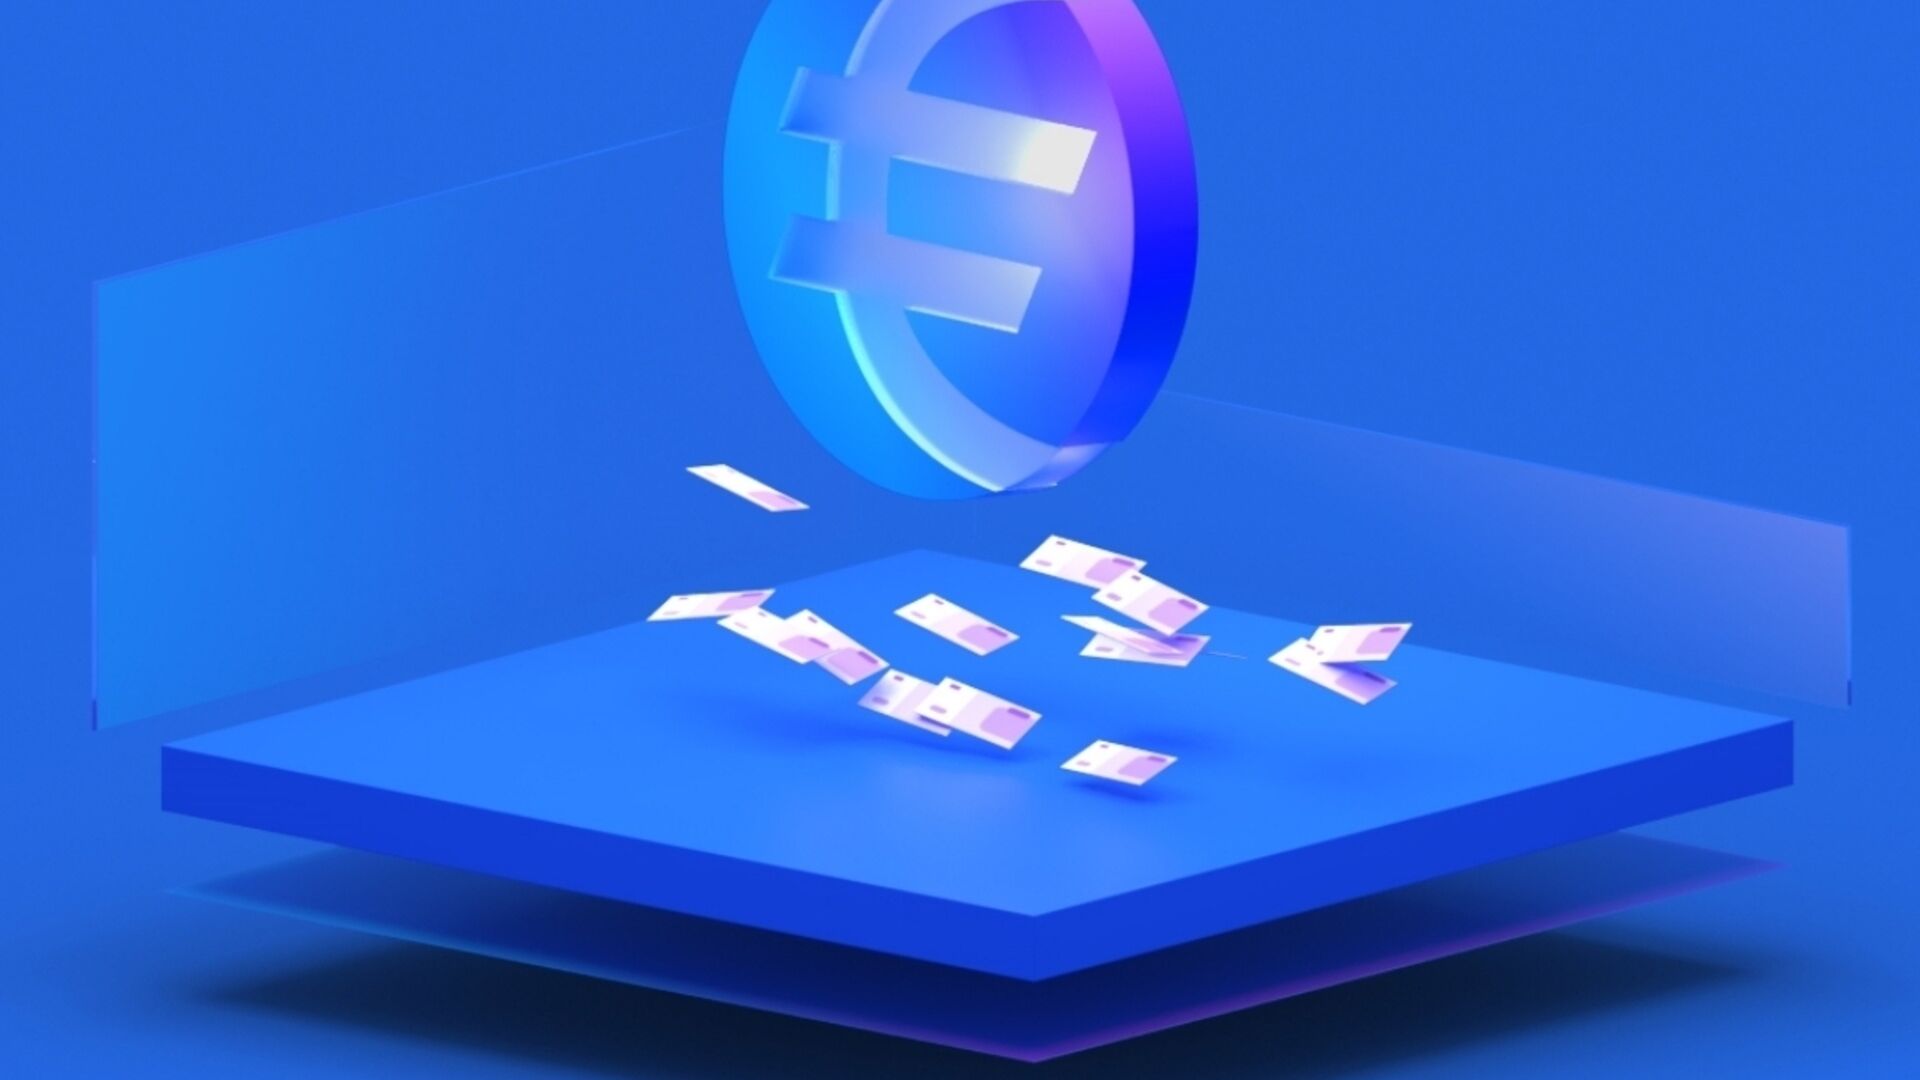 Stasis: EURS è una stable-coin basata sull’euro lanciata nel 2018